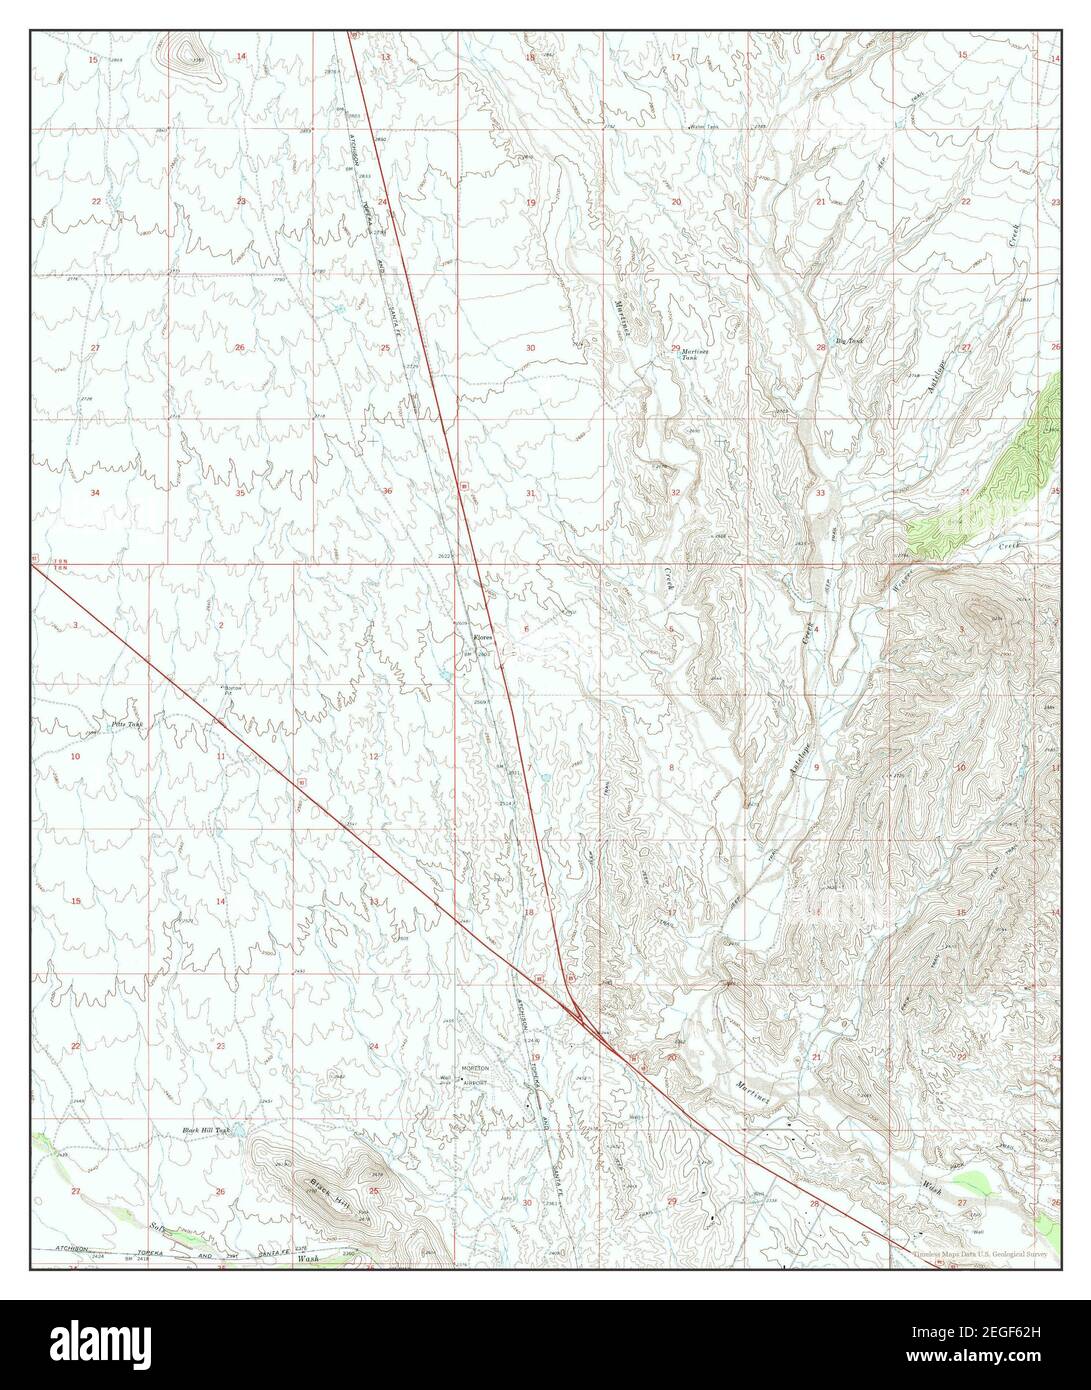 Flores, Arizona, Karte 1969, 1:24000, Vereinigte Staaten von Amerika von Timeless Maps, Daten U.S. Geological Survey Stockfoto